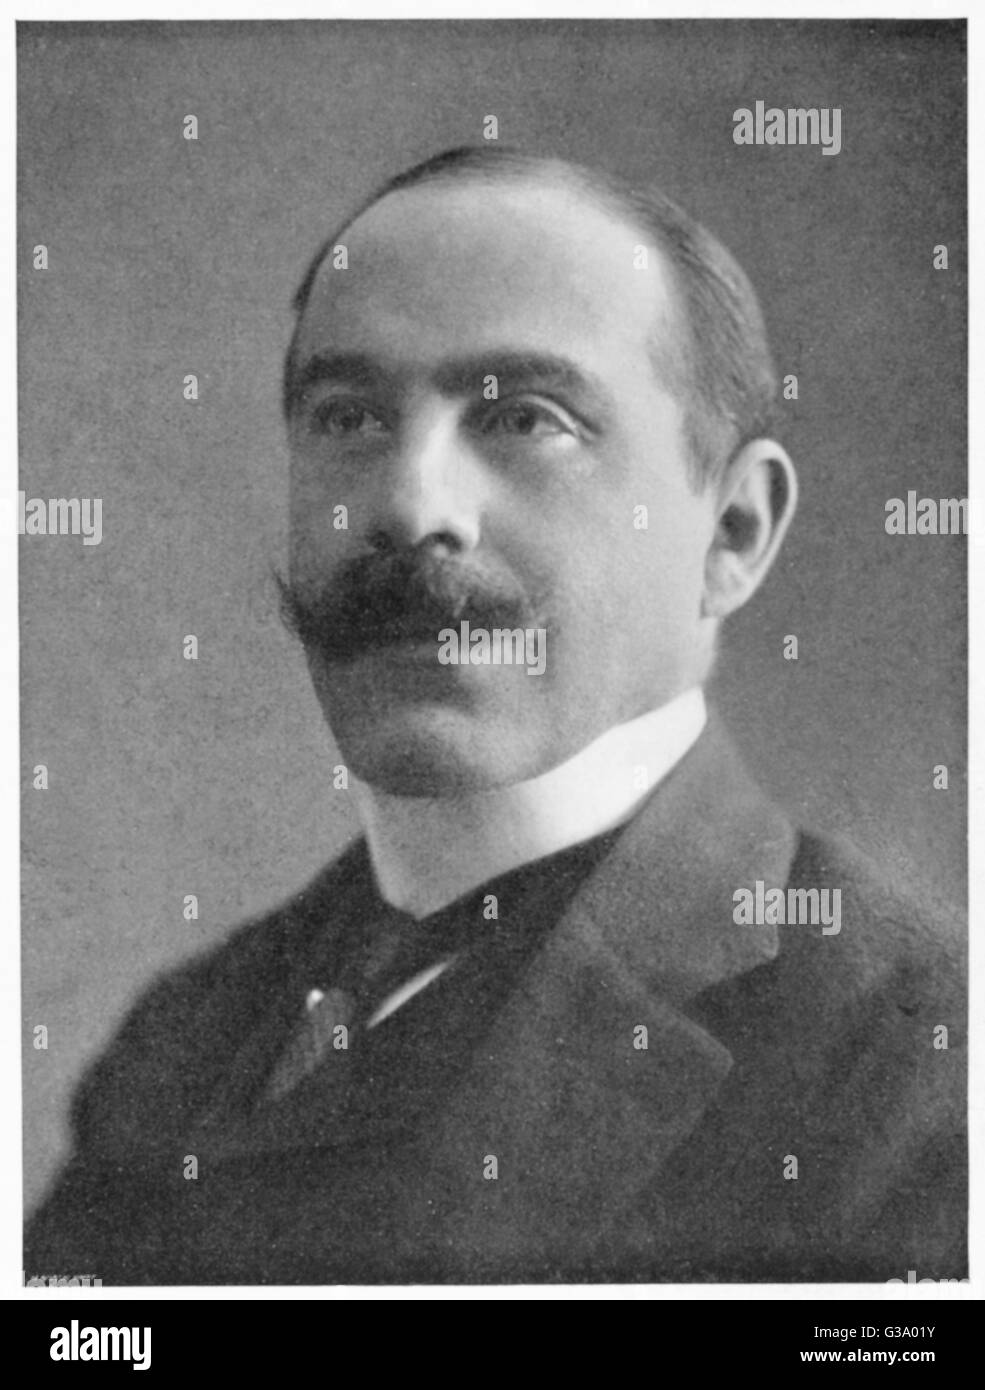 AUGUST VON WASSERMANN  German bacteriologist        Date: 1866 - 1925 Stock Photo